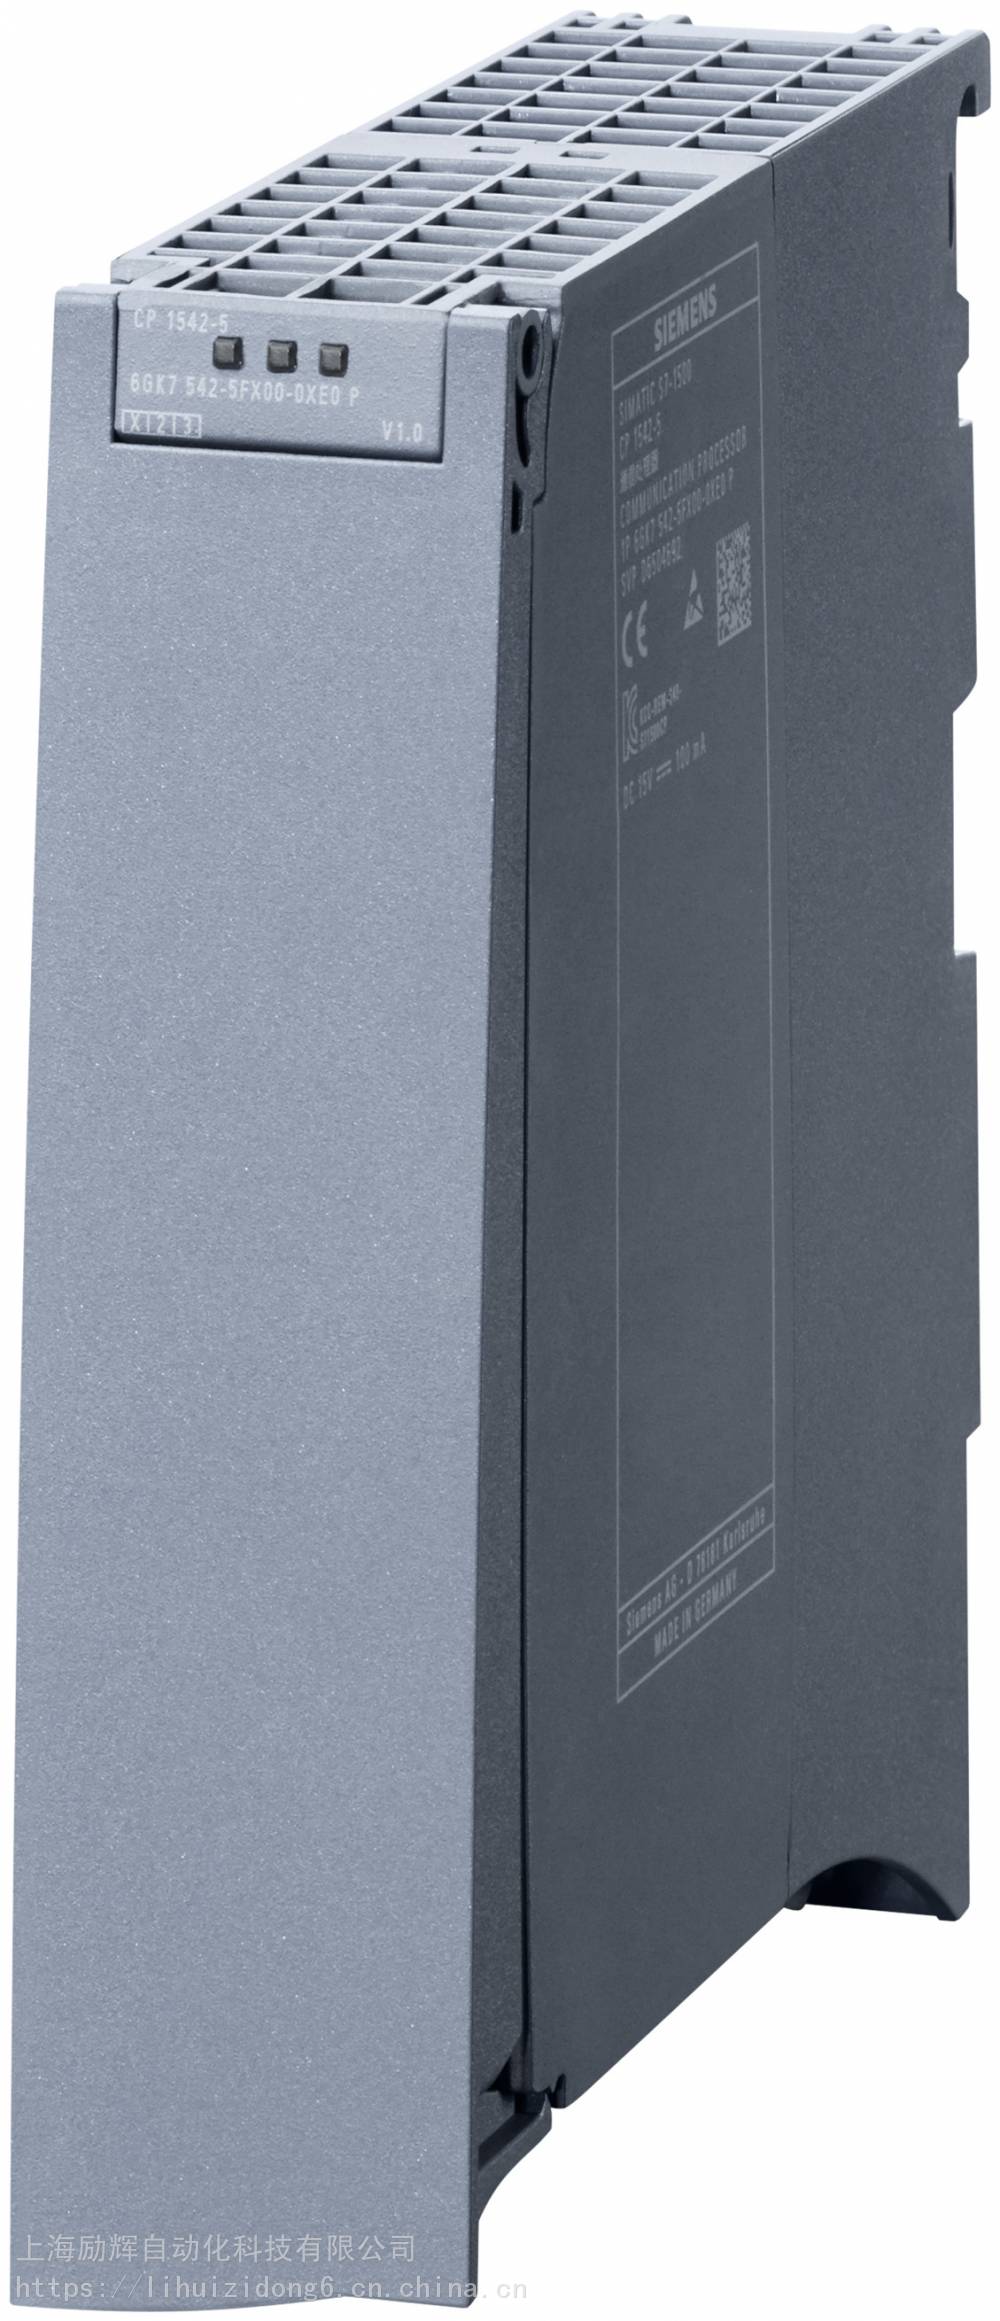 西门子S7-1500系列6GK7542-5FX00-0xE0一级授权代理商